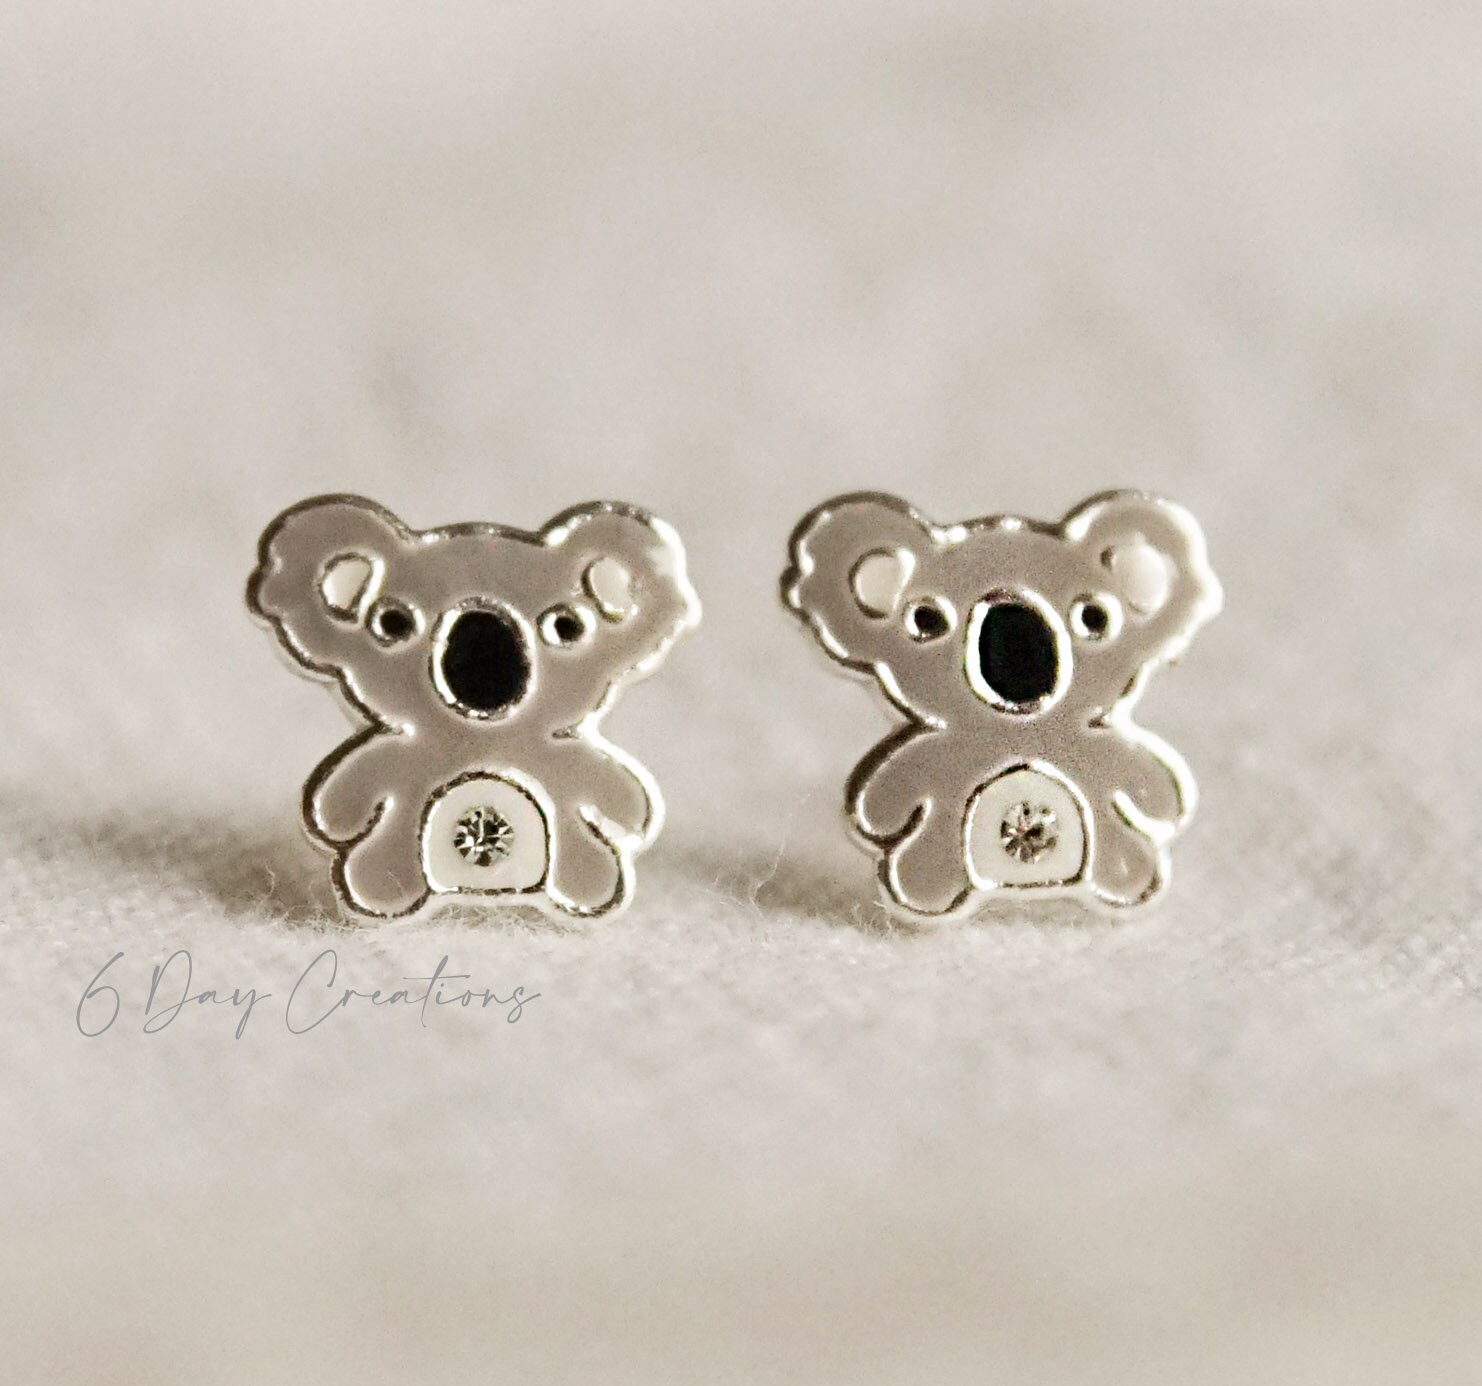 Koala Bear Stud Earrings 925 Sterling Silver Animal Stud Earrings Cute  Koala Hold Heart Cubic Zirconia Stud Earrings Koala Gifts for Women Girls